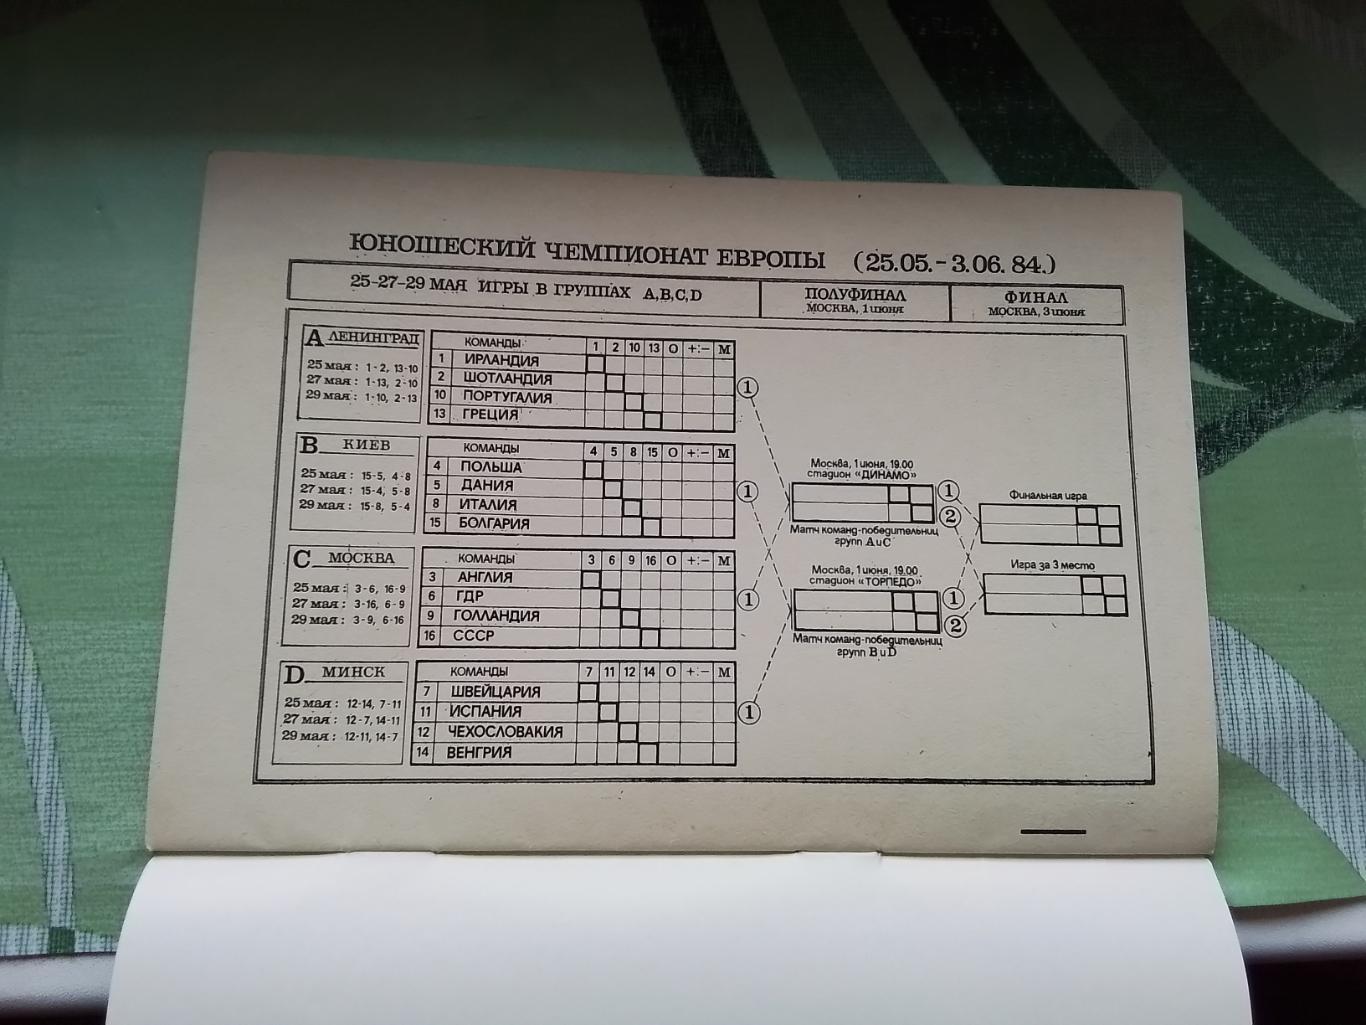 ЧЕ Юноши 1984 Финал группа В Польша Дания Италия Болгария 2